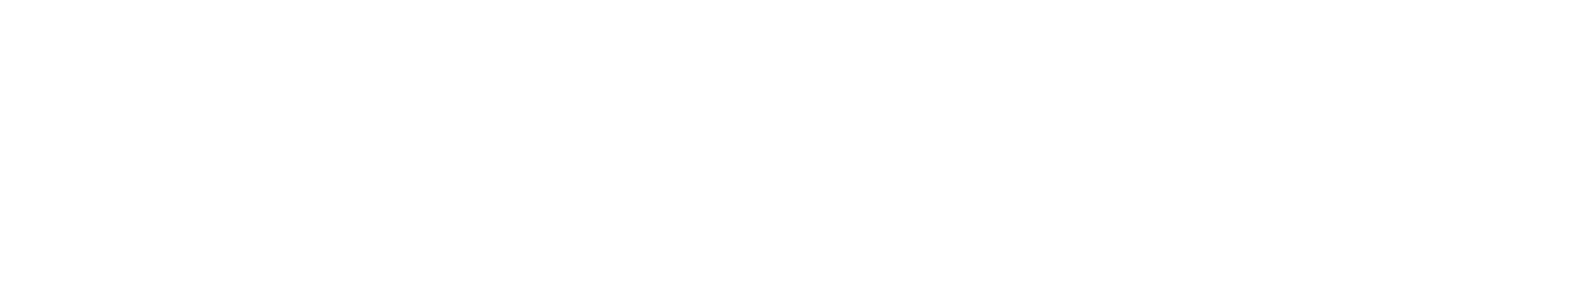 Weyerhaeuser
 logo large for dark backgrounds (transparent PNG)